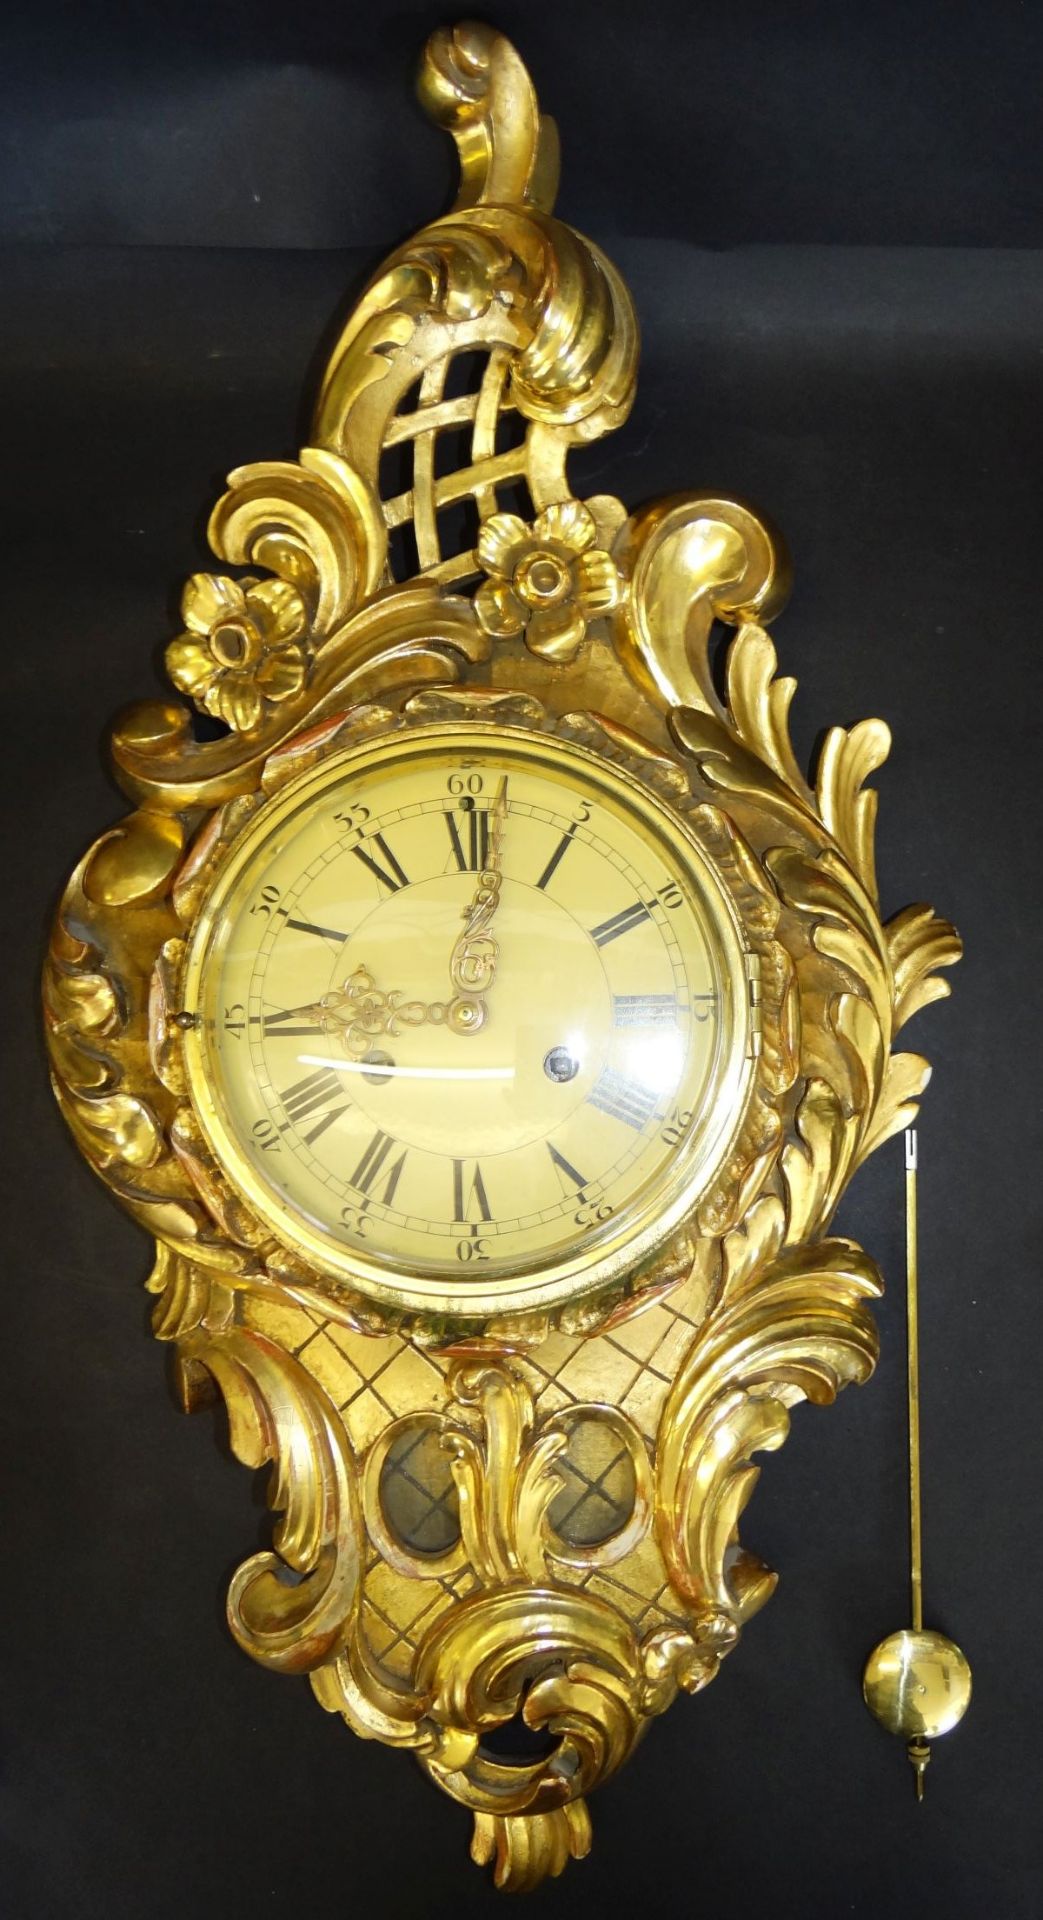 gr. Kartell-Uhr, Holz vergoldet, , H-62 cm, B-32 cm, guter Zustand, leider falsches , zu langes - Bild 2 aus 10